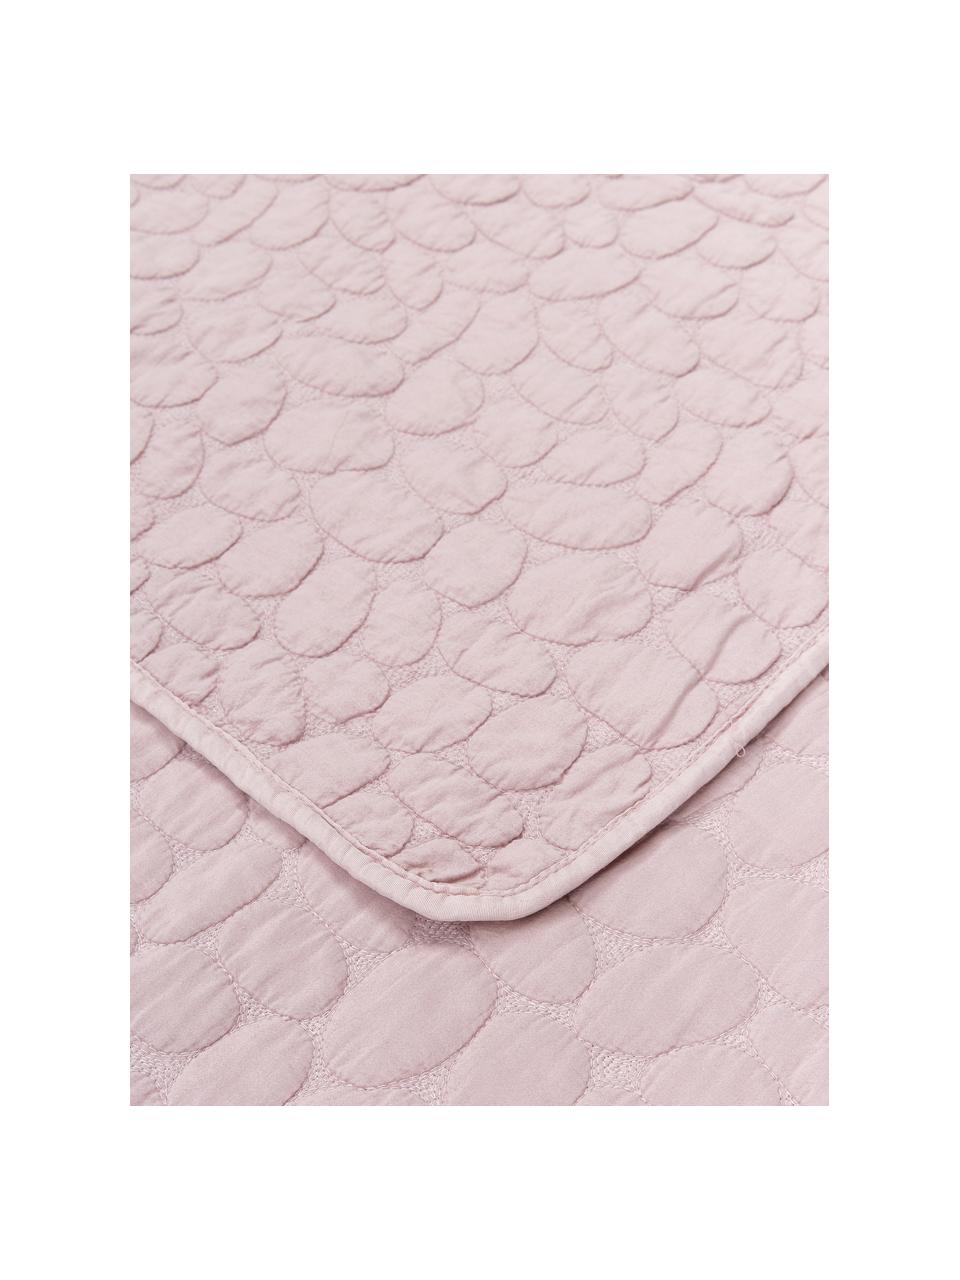 Gewatteerde bedsprei Mailey in roze, 100% polyester, Roze, B 150 x L 250 cm (voor bedden tot 100 x 200)